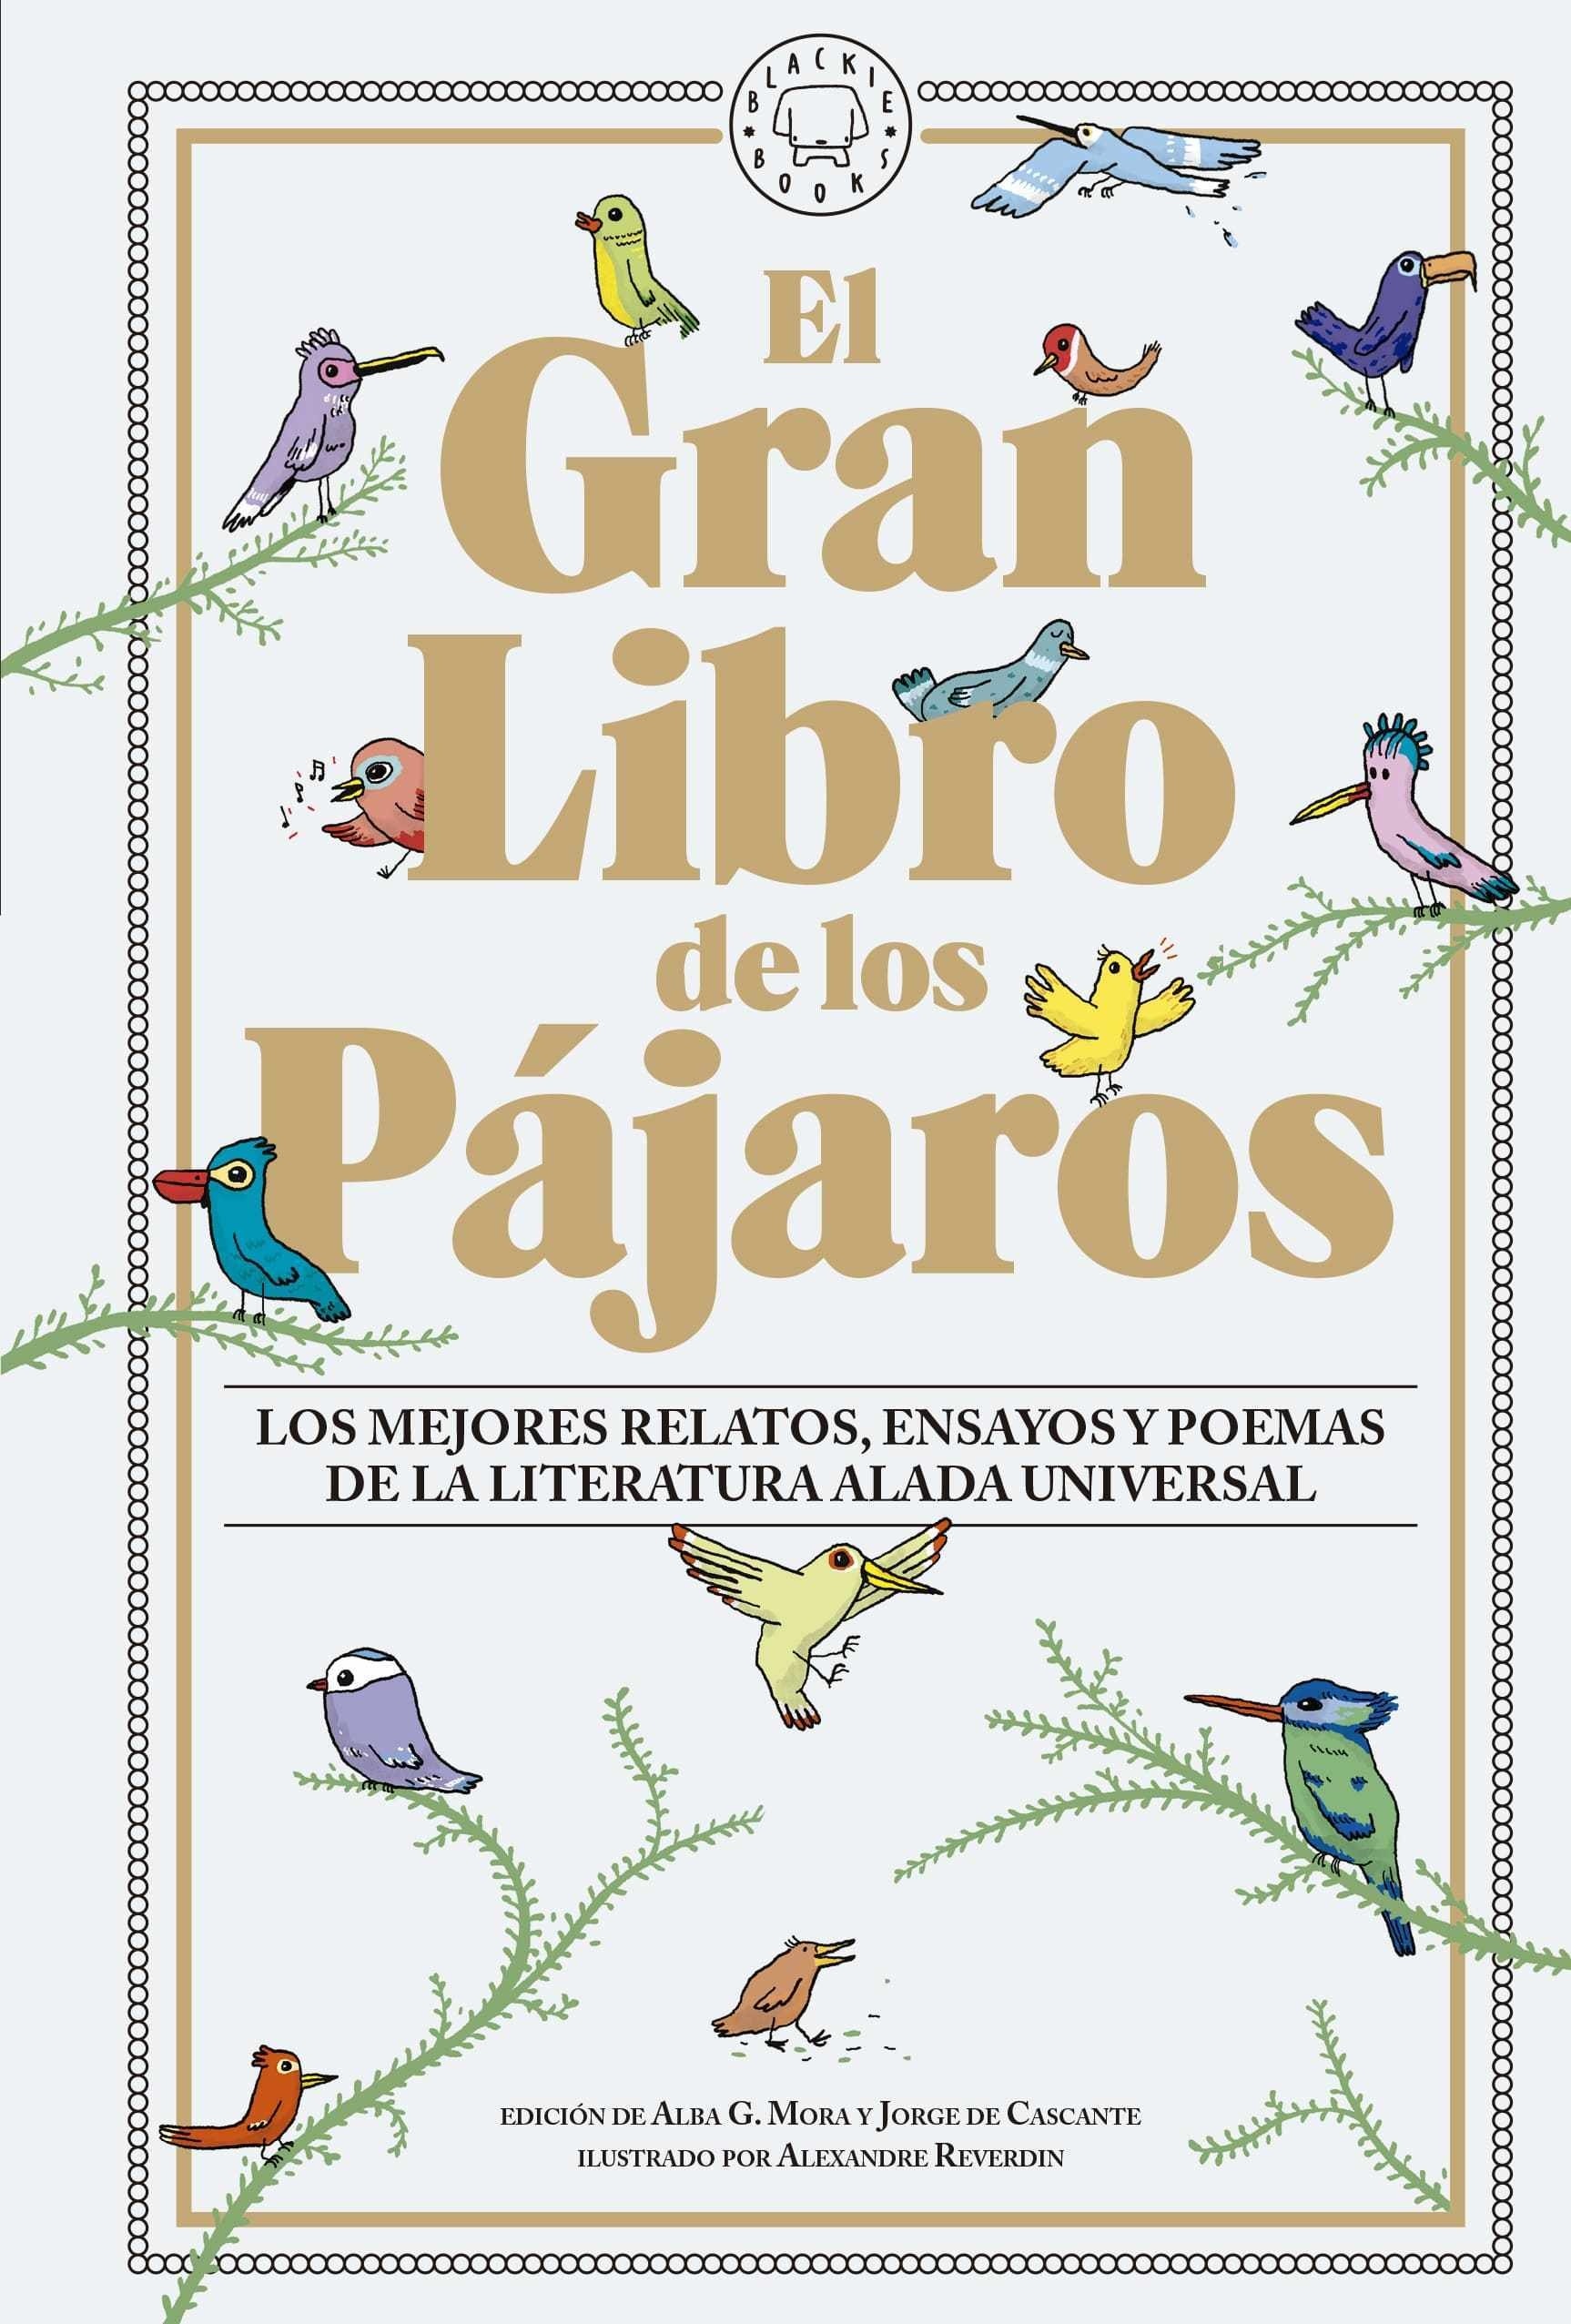 Gran Libro de los Pájaros, El "Los mejores relatos, ensayos y poemas de la literatura alada universal"